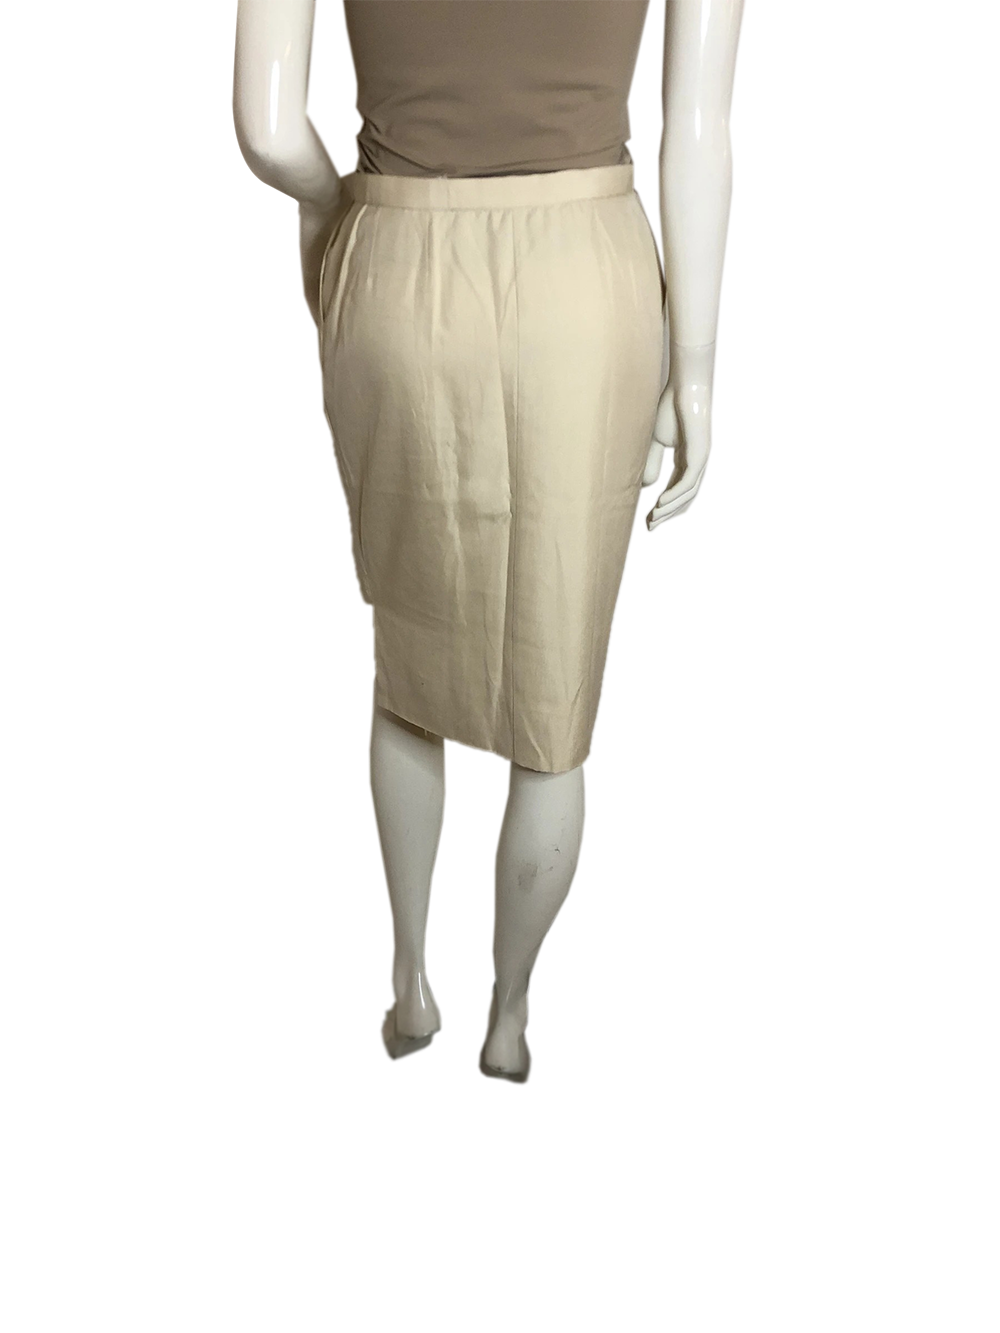 Chanel Off White Skirt SKU 000154